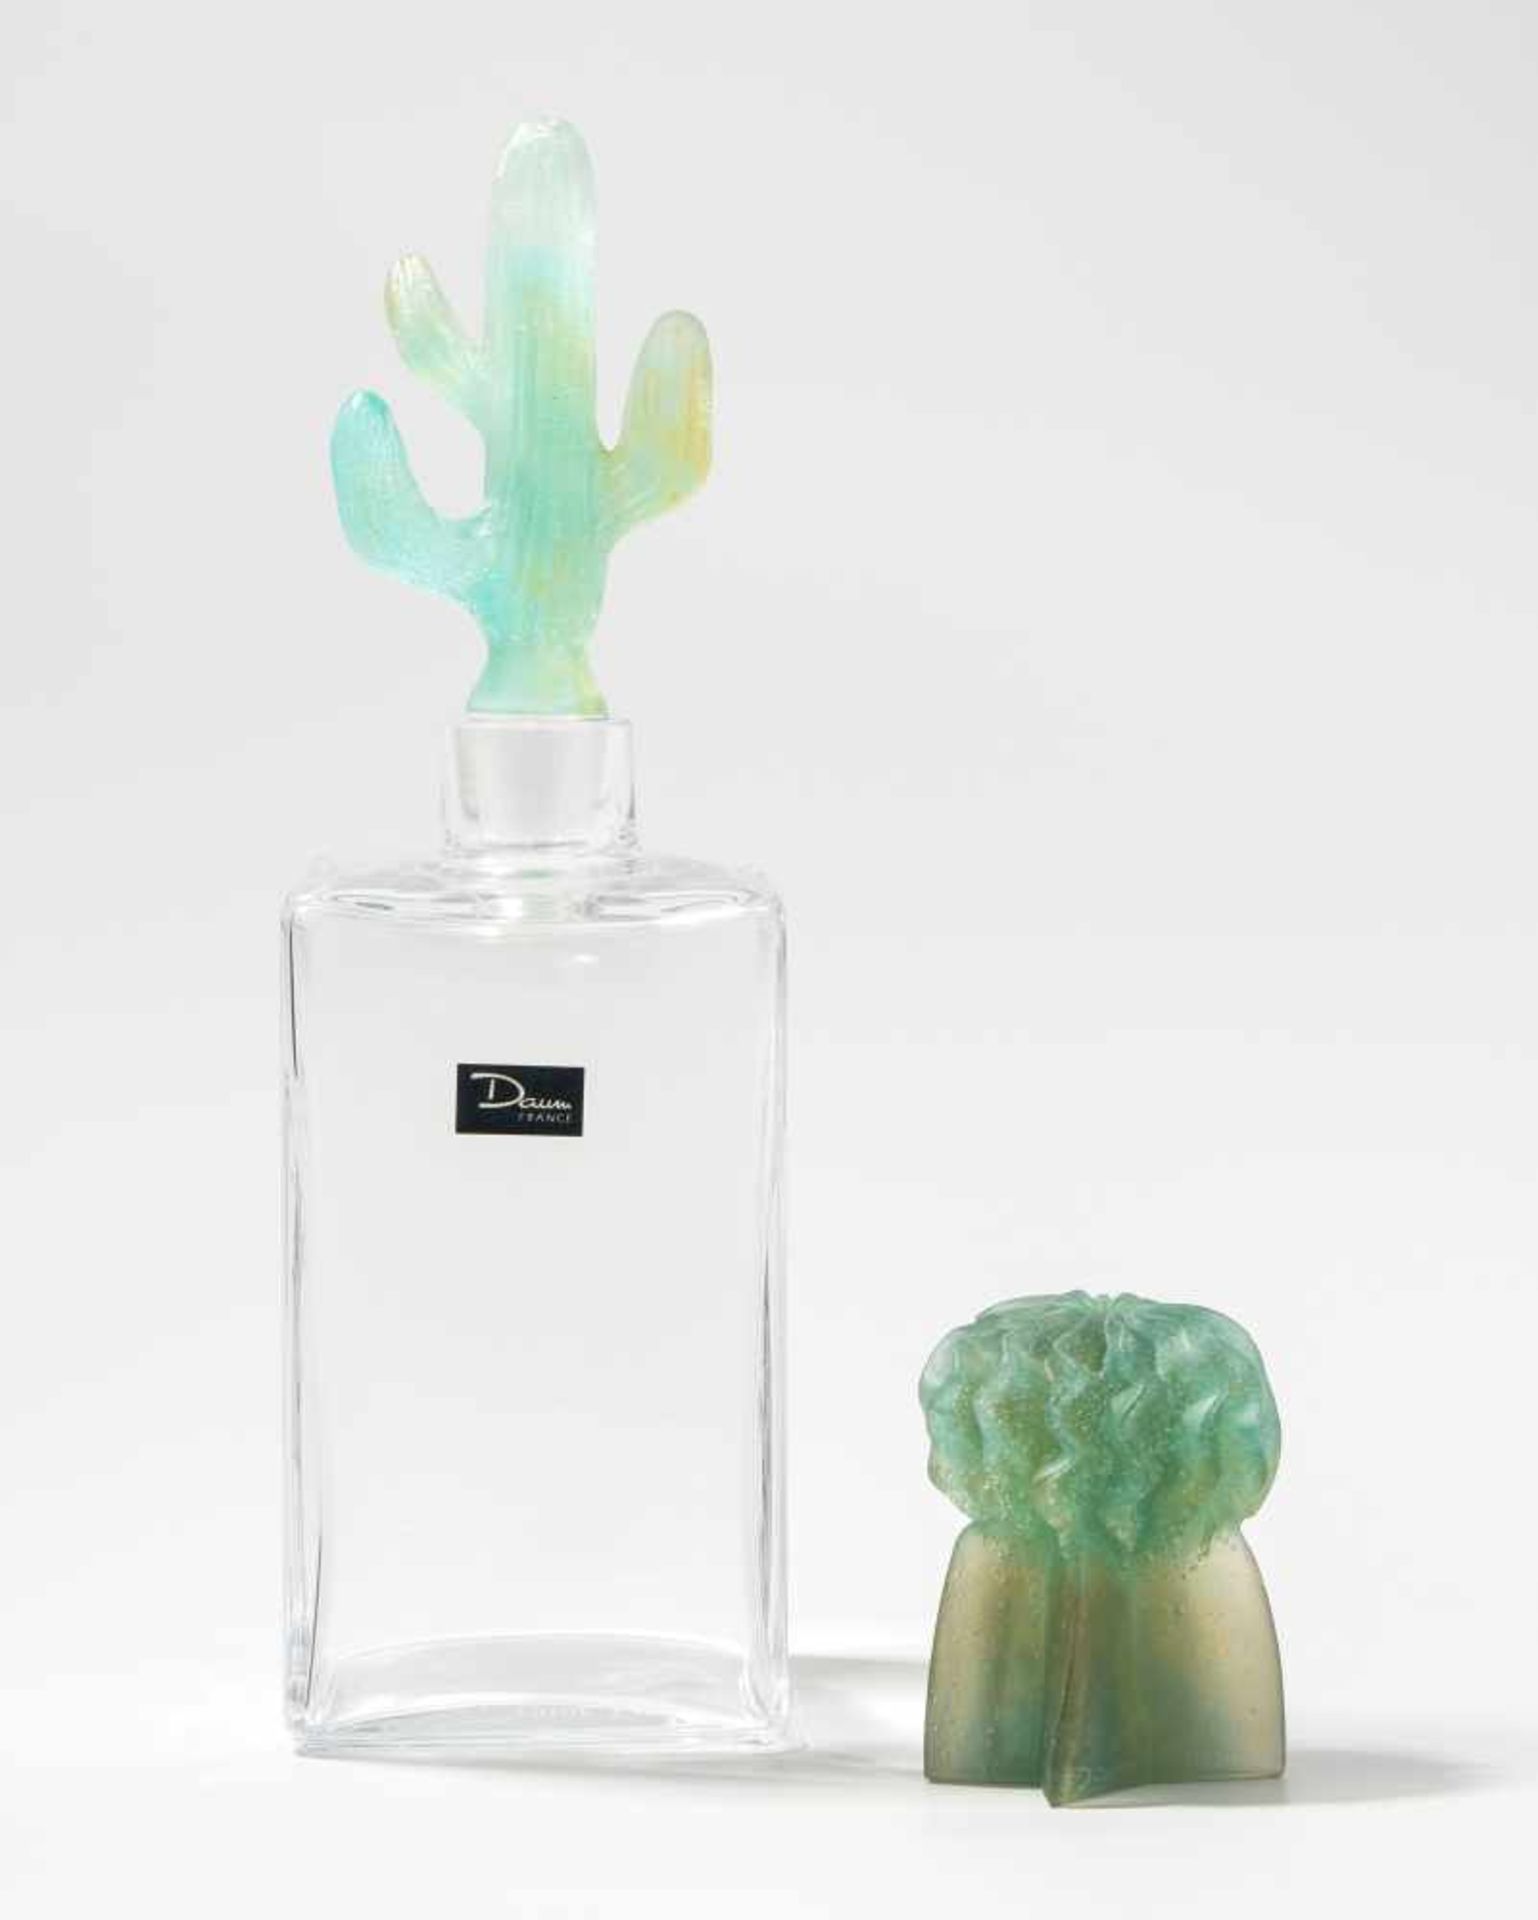 Karaffe "Cactus", Daum France Um 1987. Entwurf: Hilton Mc Connico. Farbloses Kristallglas grün-